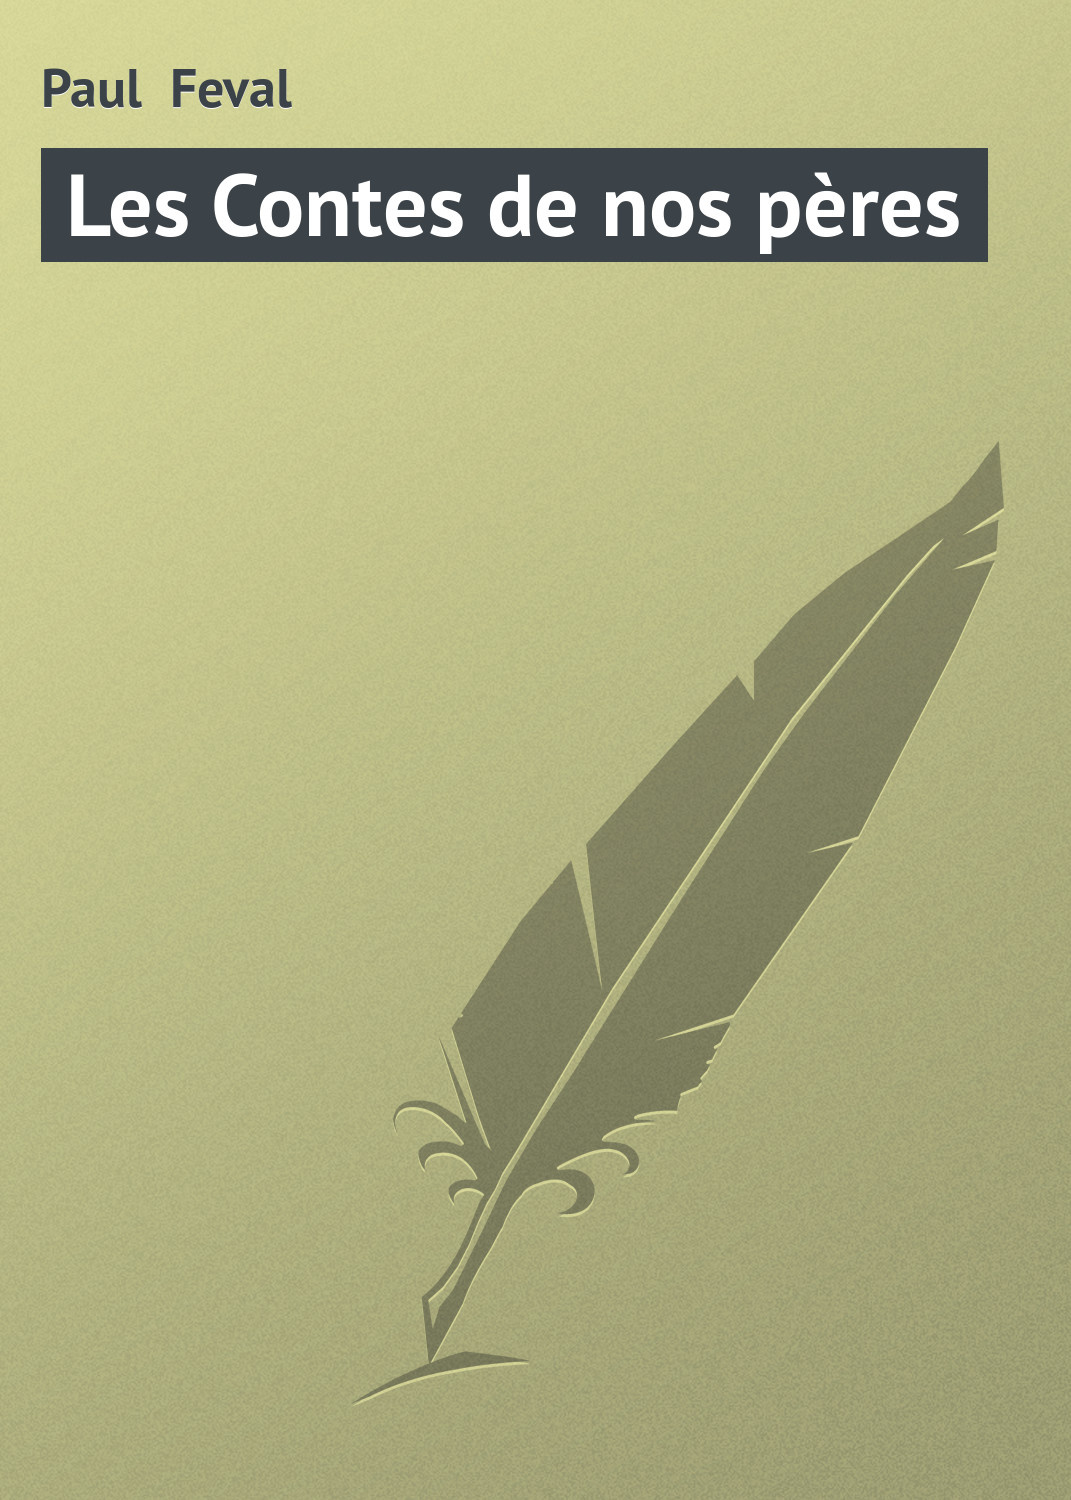 Книга Les Contes de nos pères из серии , созданная Paul Feval, может относится к жанру Зарубежная старинная литература, Зарубежная классика. Стоимость электронной книги Les Contes de nos pères с идентификатором 21106030 составляет 5.99 руб.